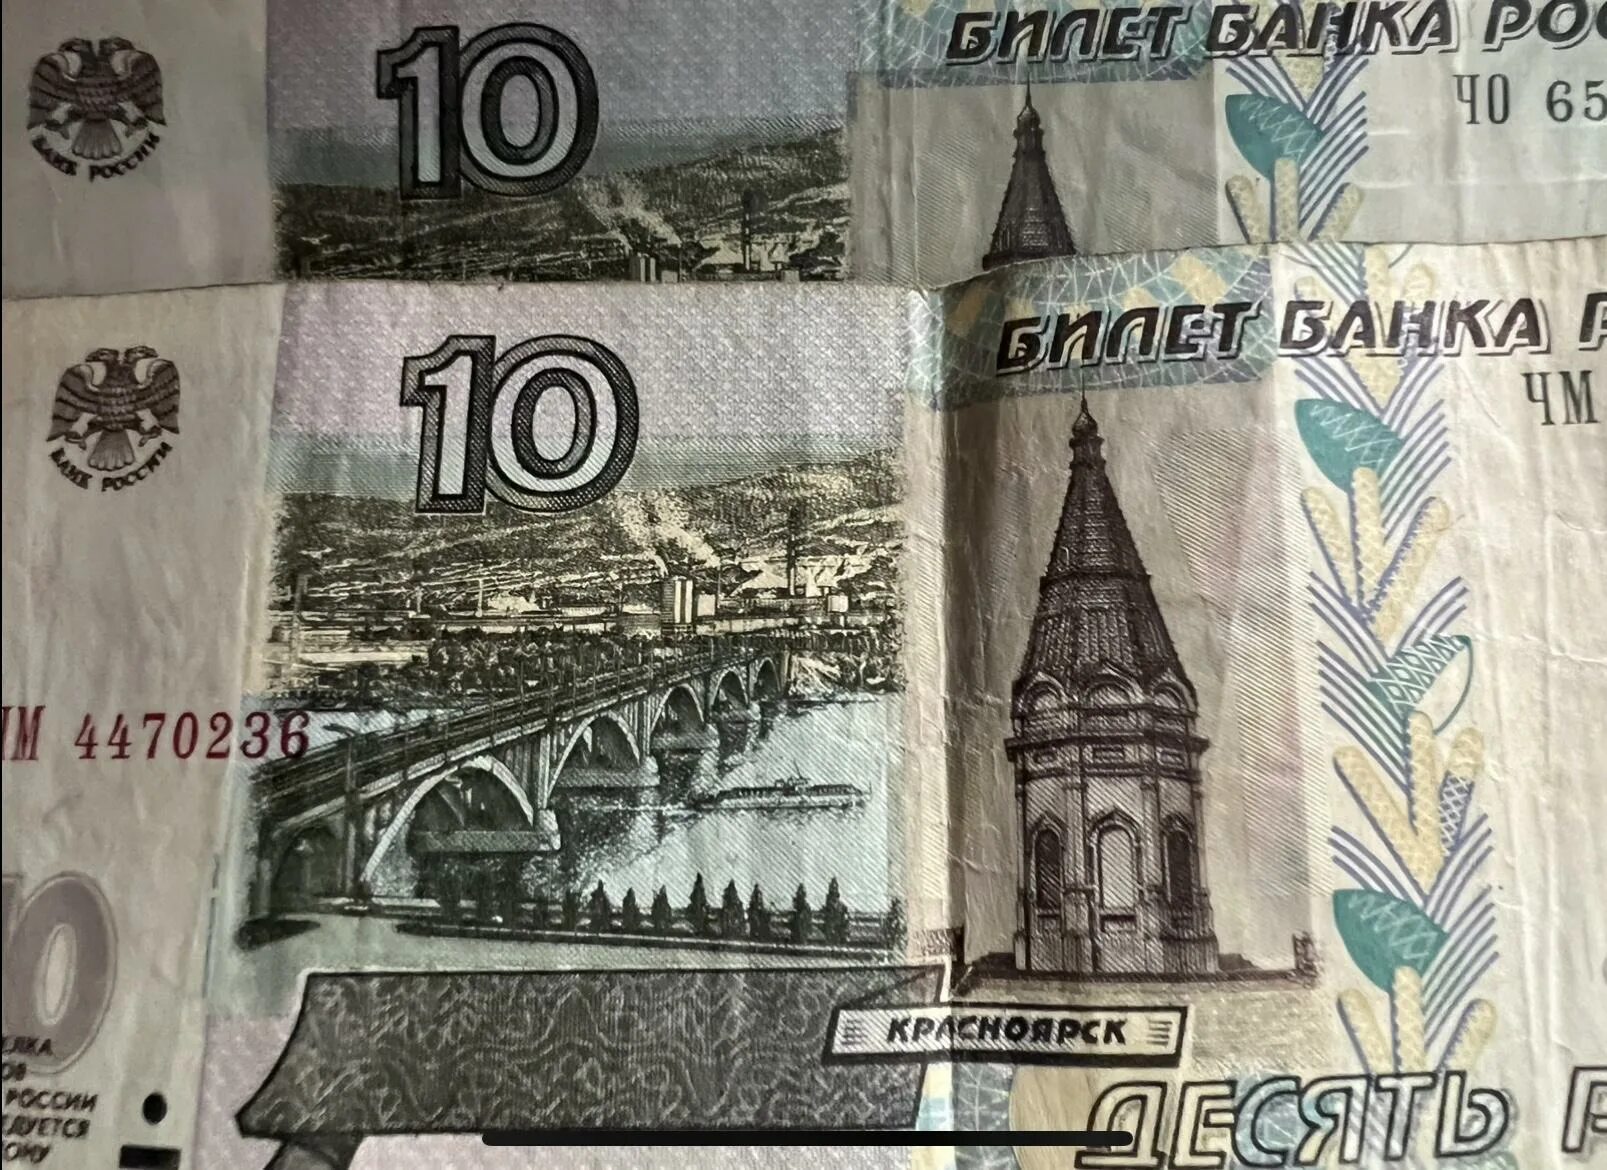 5 руб новые. 10 Рублей купюра. 10 Рублей банкнота. Купюры номиналом 5 и 10 рублей. Десять рублей купюра.